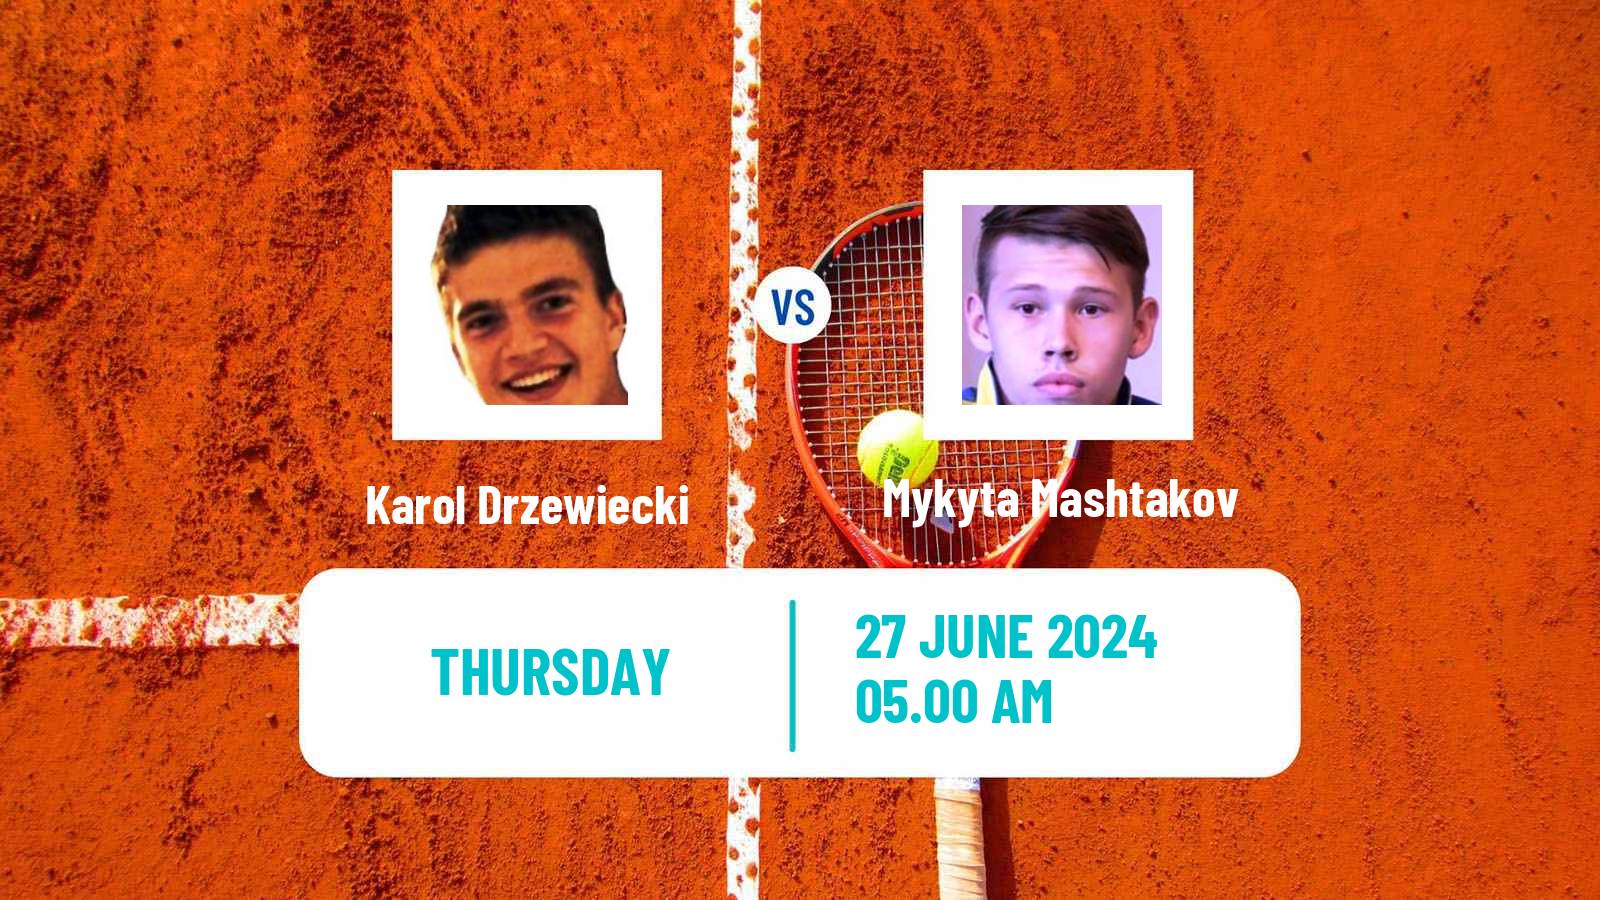 Tennis ITF M15 Wroclaw Men Karol Drzewiecki - Mykyta Mashtakov